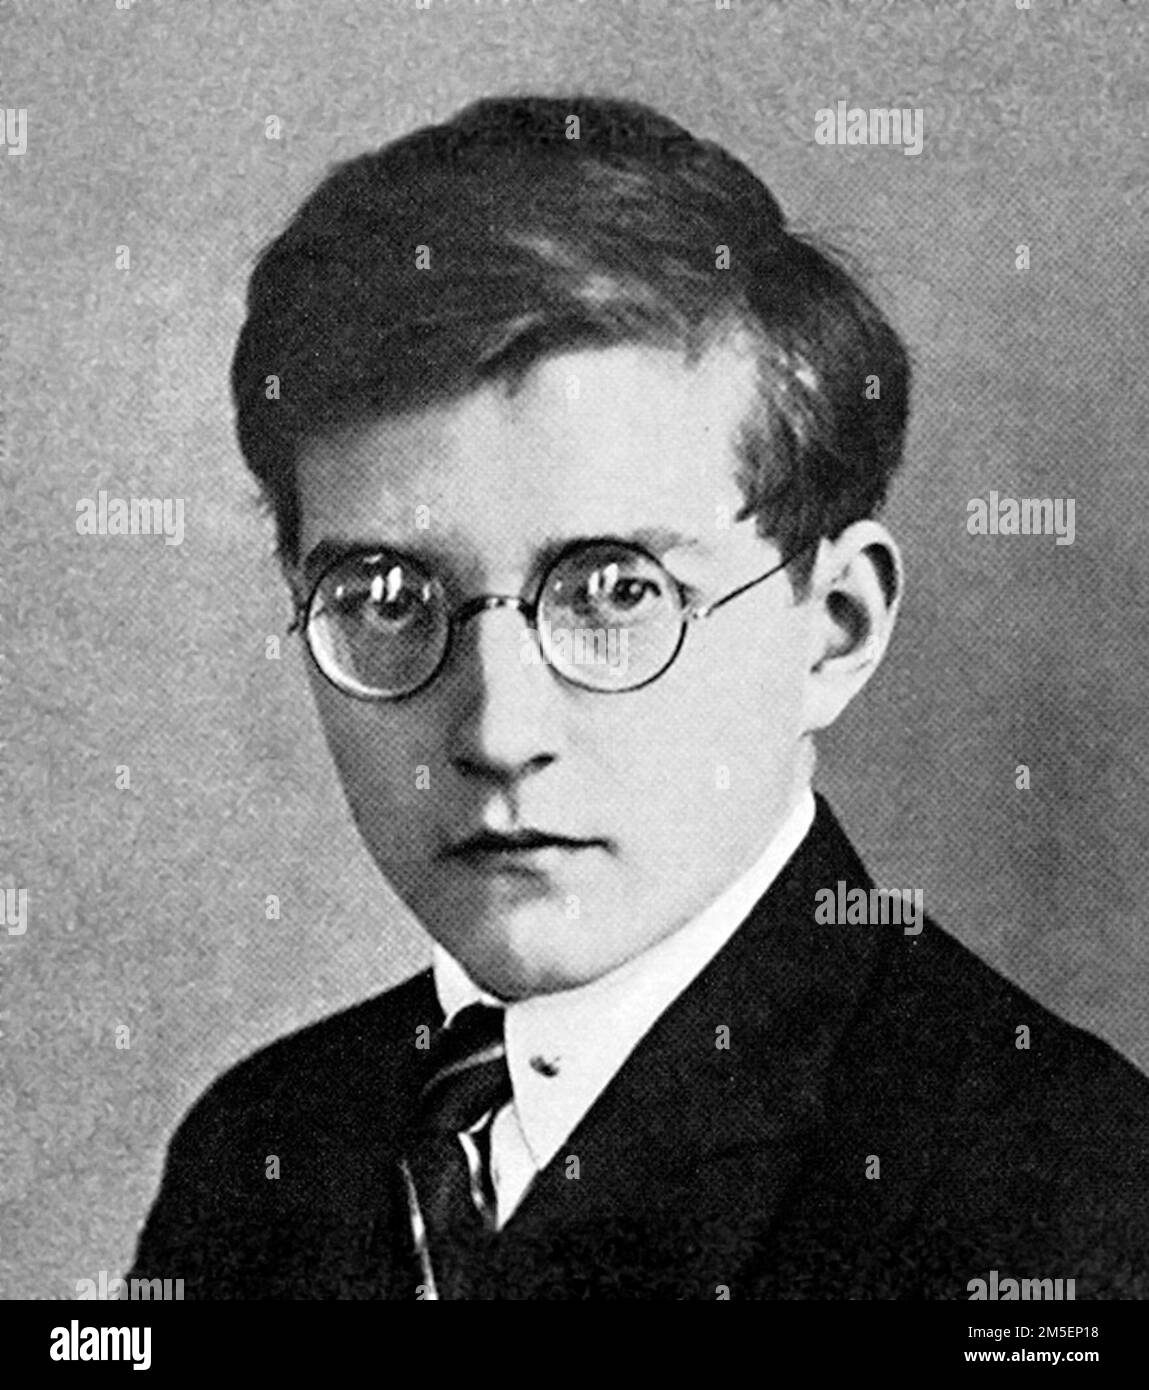 Shostakovich. Ritratto del compositore e pianista russo Dmitri Dmitriyevich Shostakovich (1906-1975) da giovane, 1925 Foto Stock